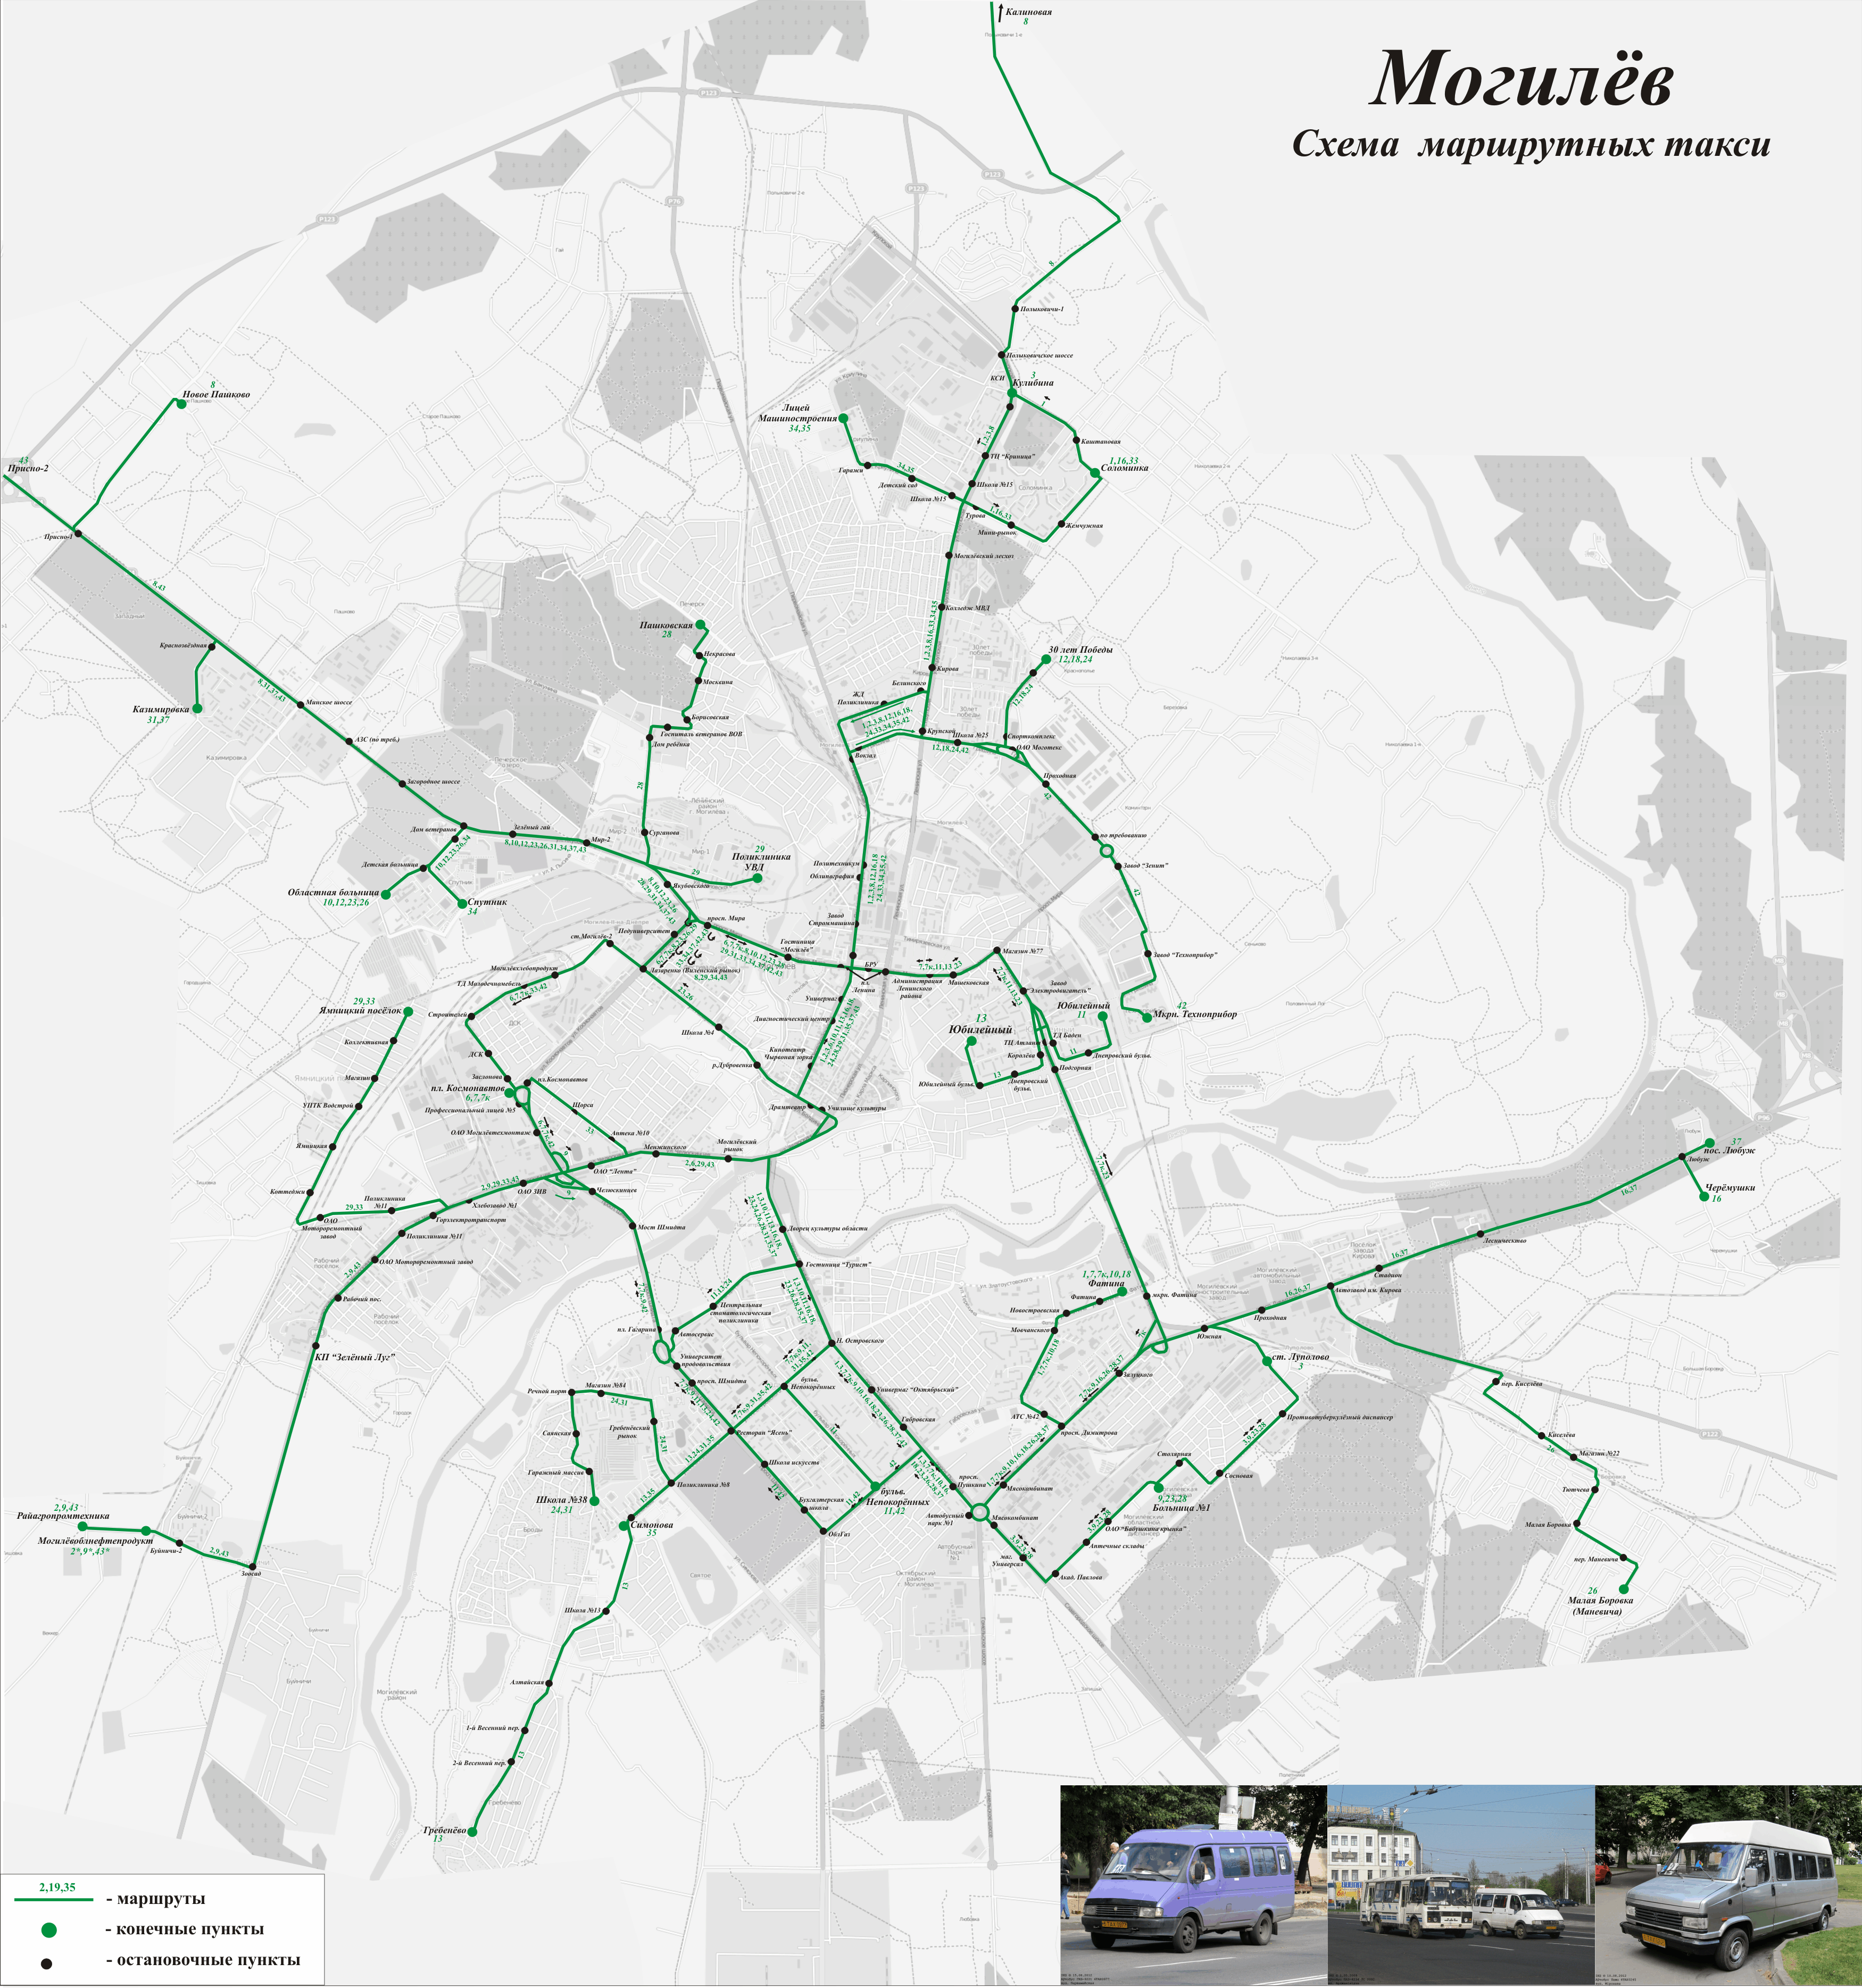 Mogilev — Maps; Maps routes